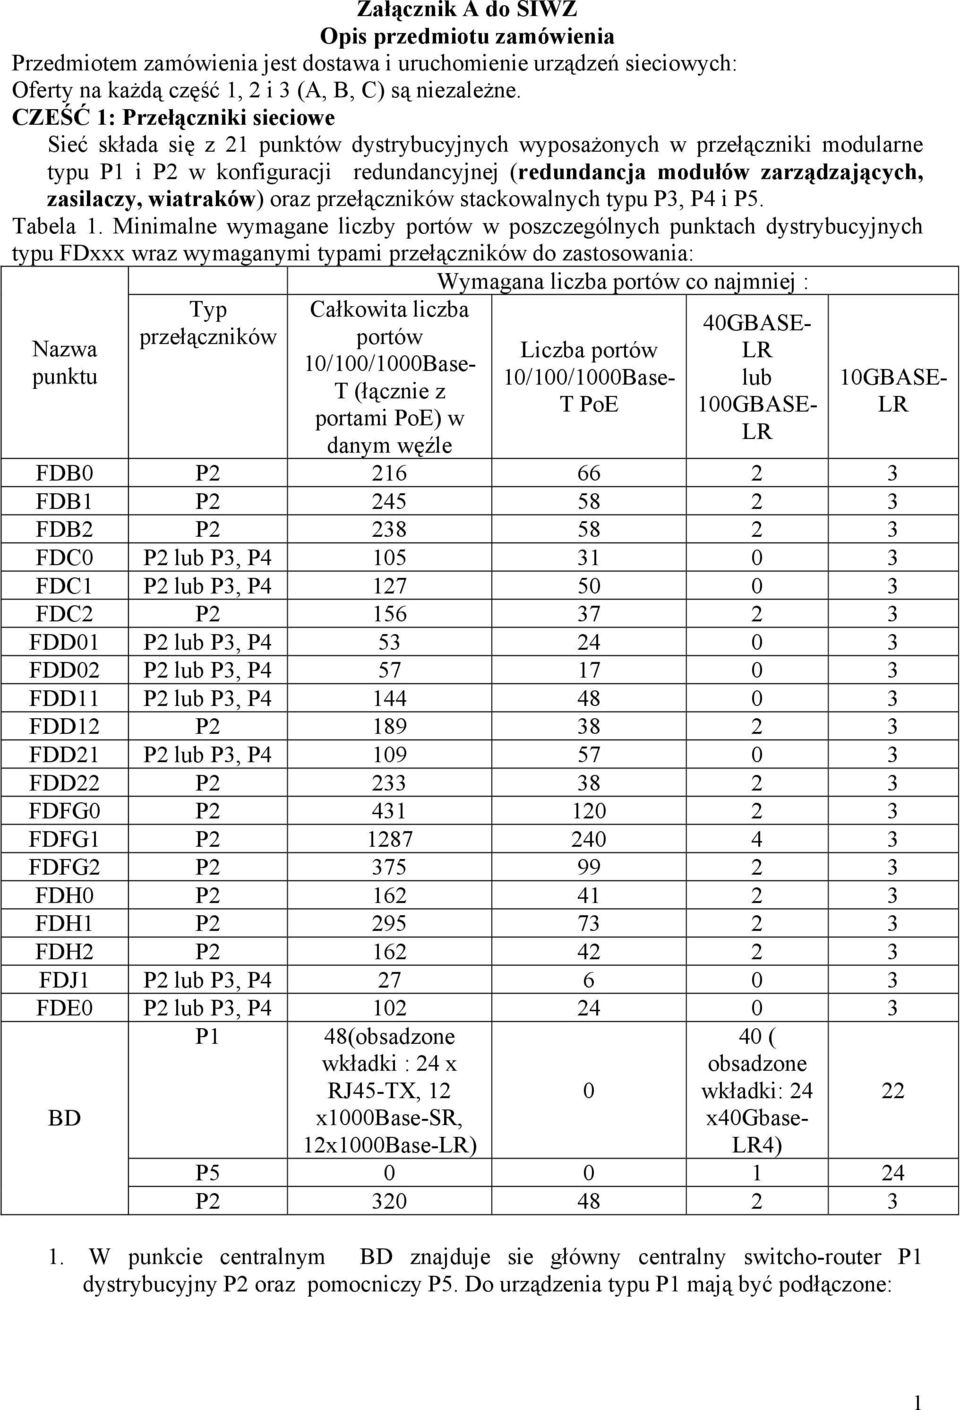 zasilaczy, wiatraków) oraz przełączników stackowalnych typu P3, P4 i P5. Tabela 1.